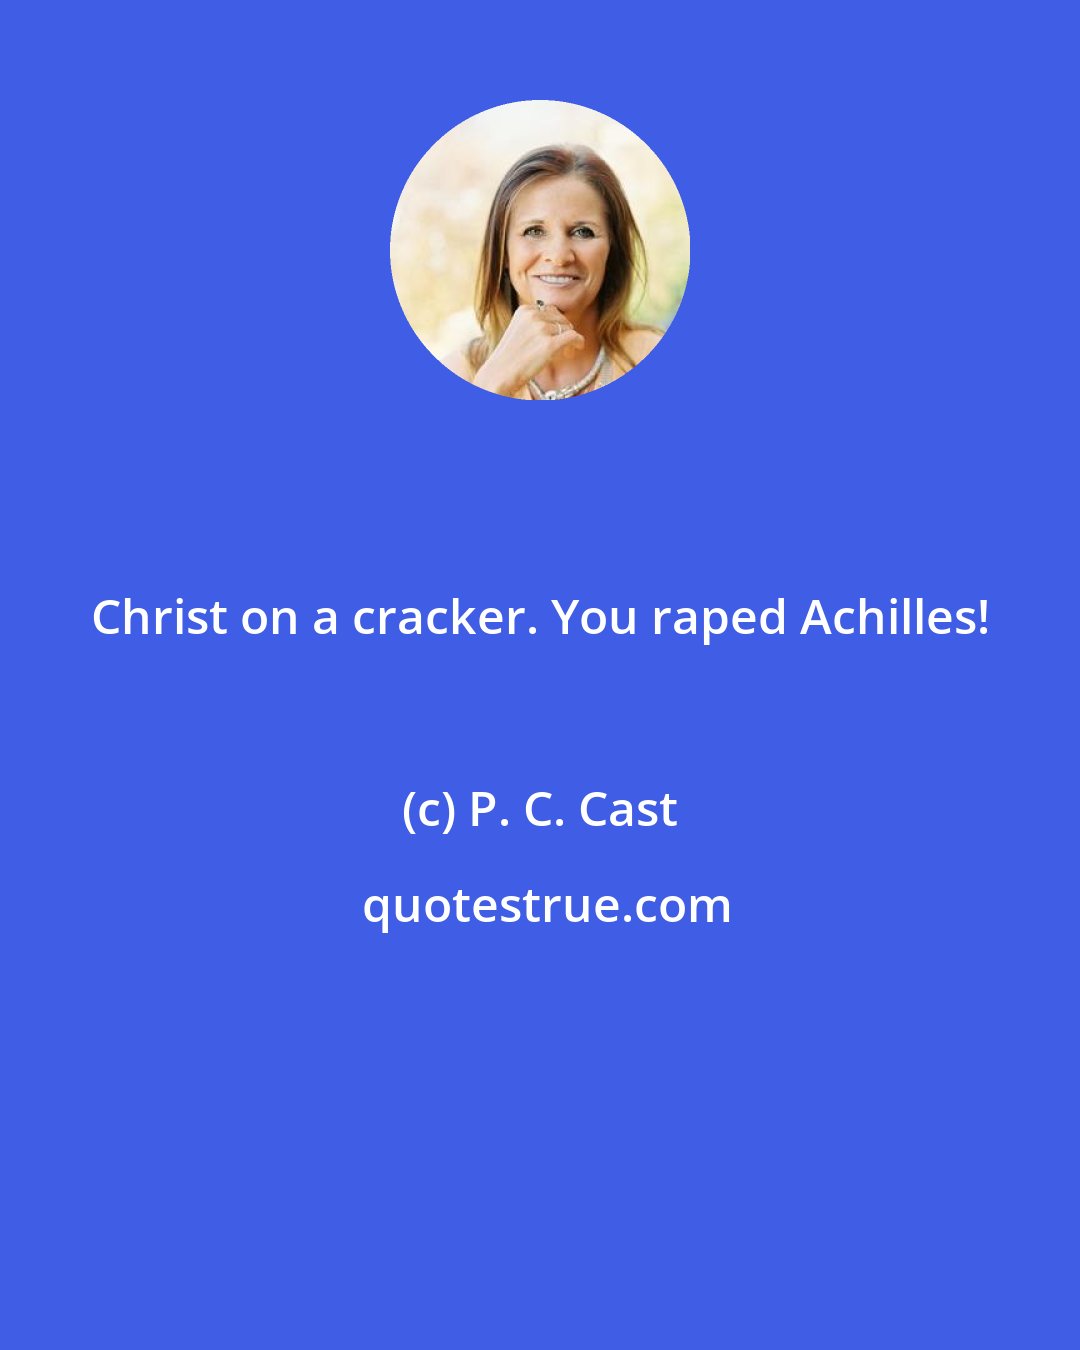 P. C. Cast: Christ on a cracker. You raped Achilles!